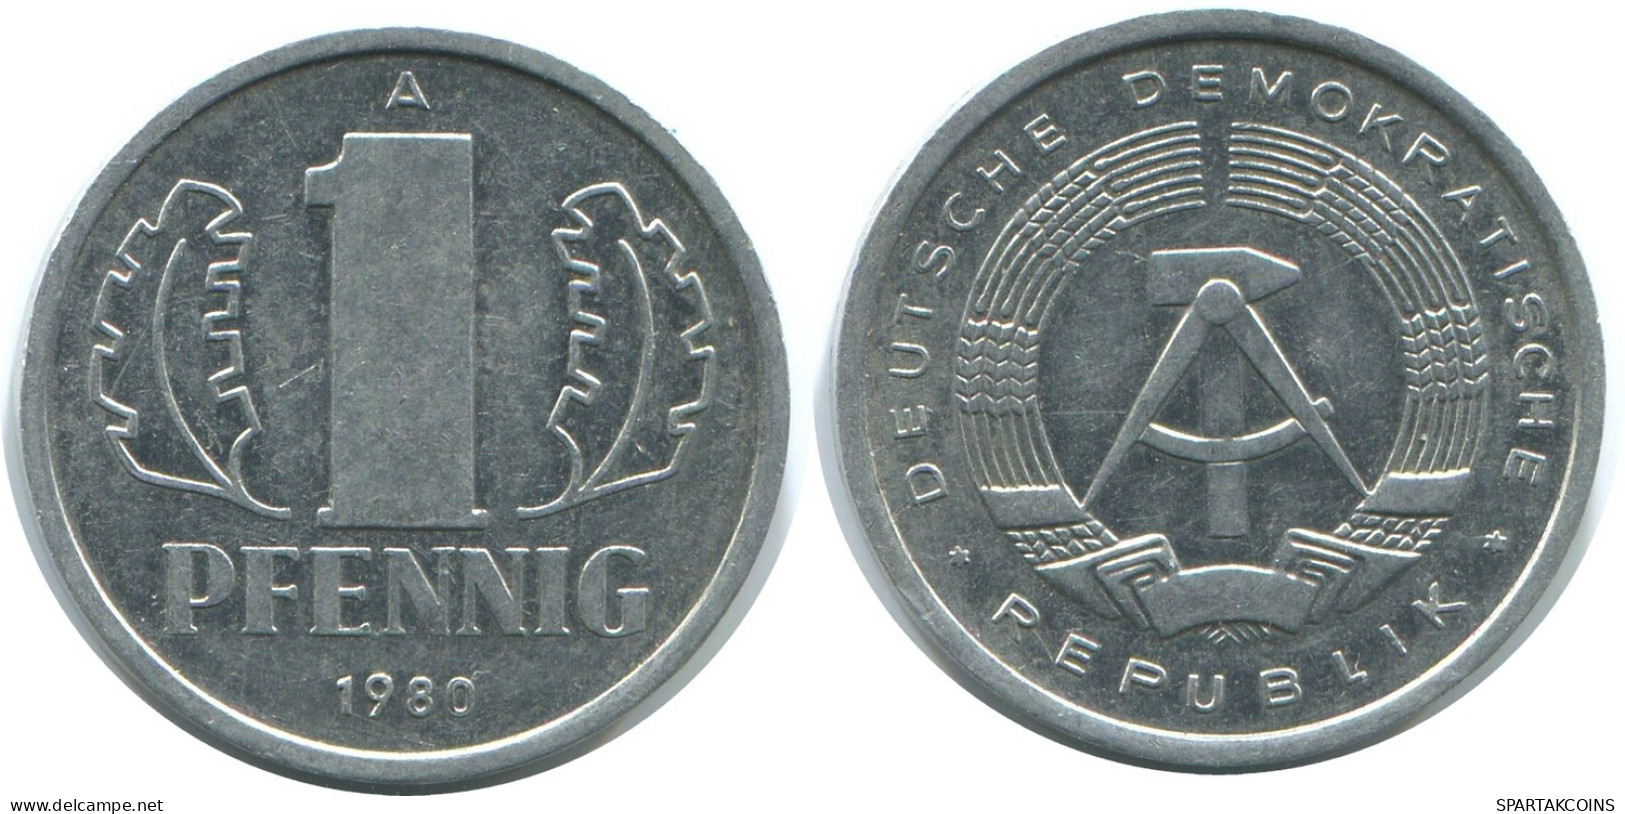 1 PFENNIG 1980 A DDR EAST DEUTSCHLAND Münze GERMANY #AE053.D - 1 Pfennig